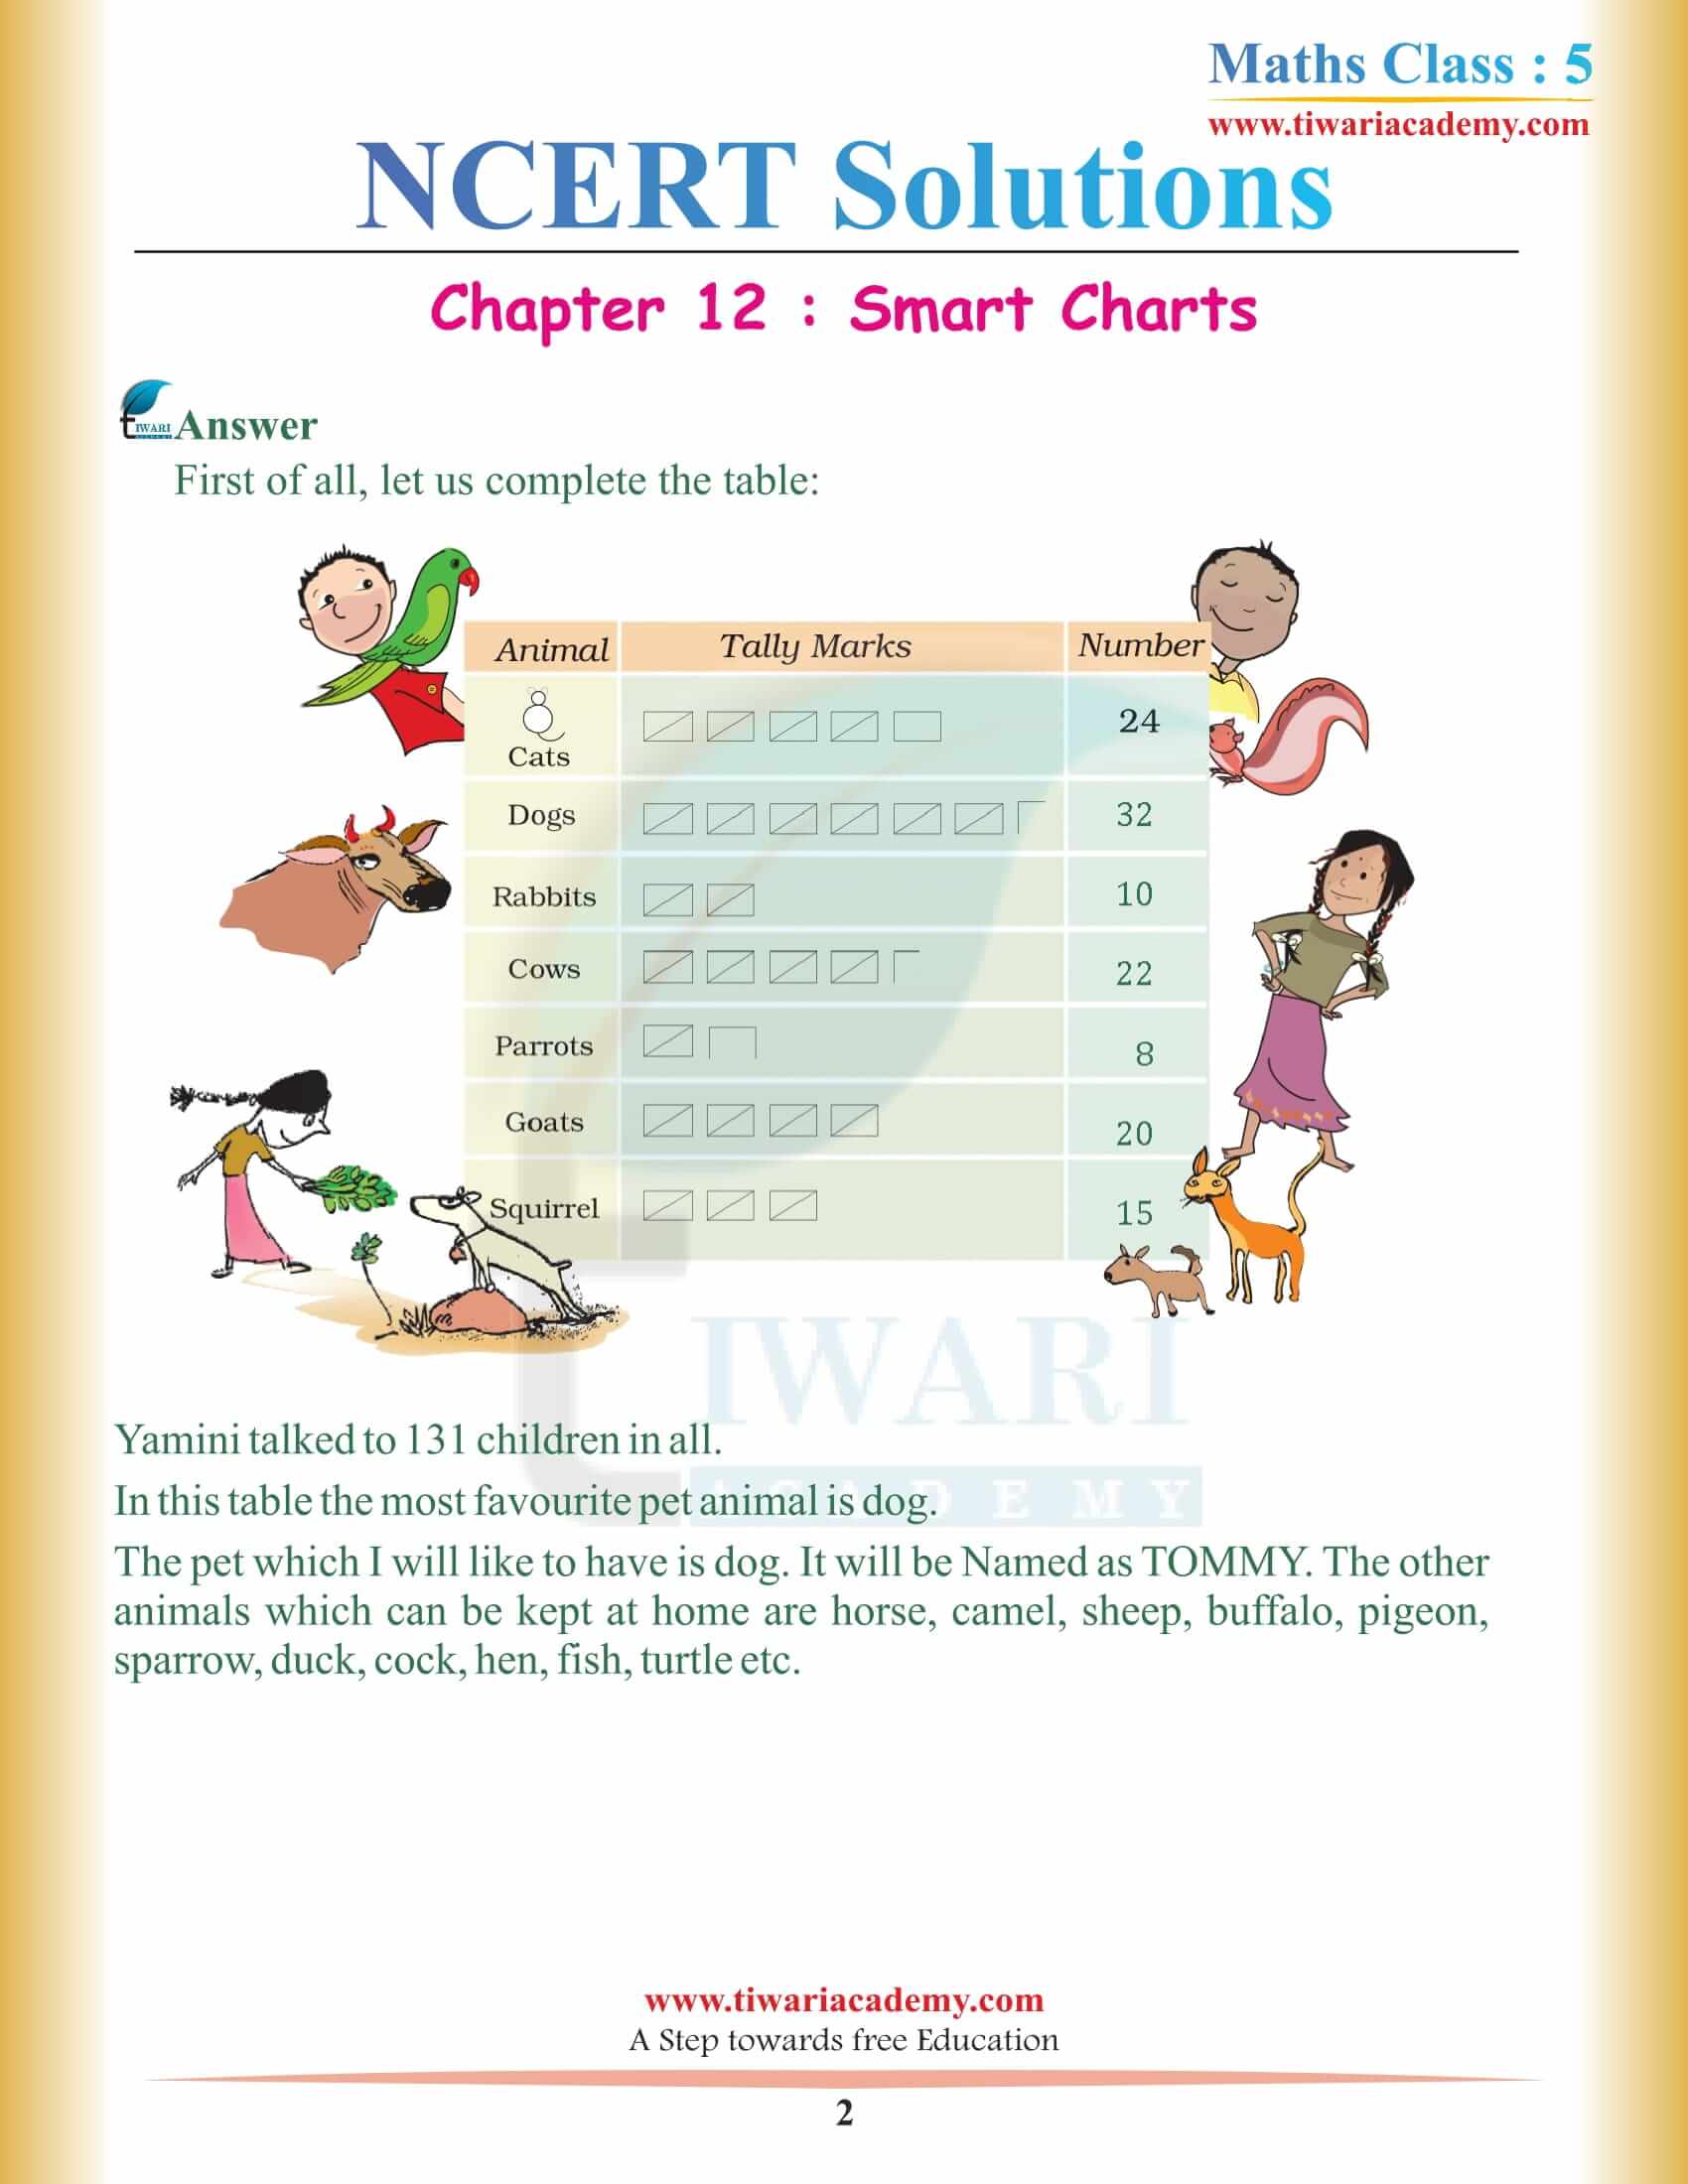 NCERT Solutions for Class 5 Maths Chapter 12